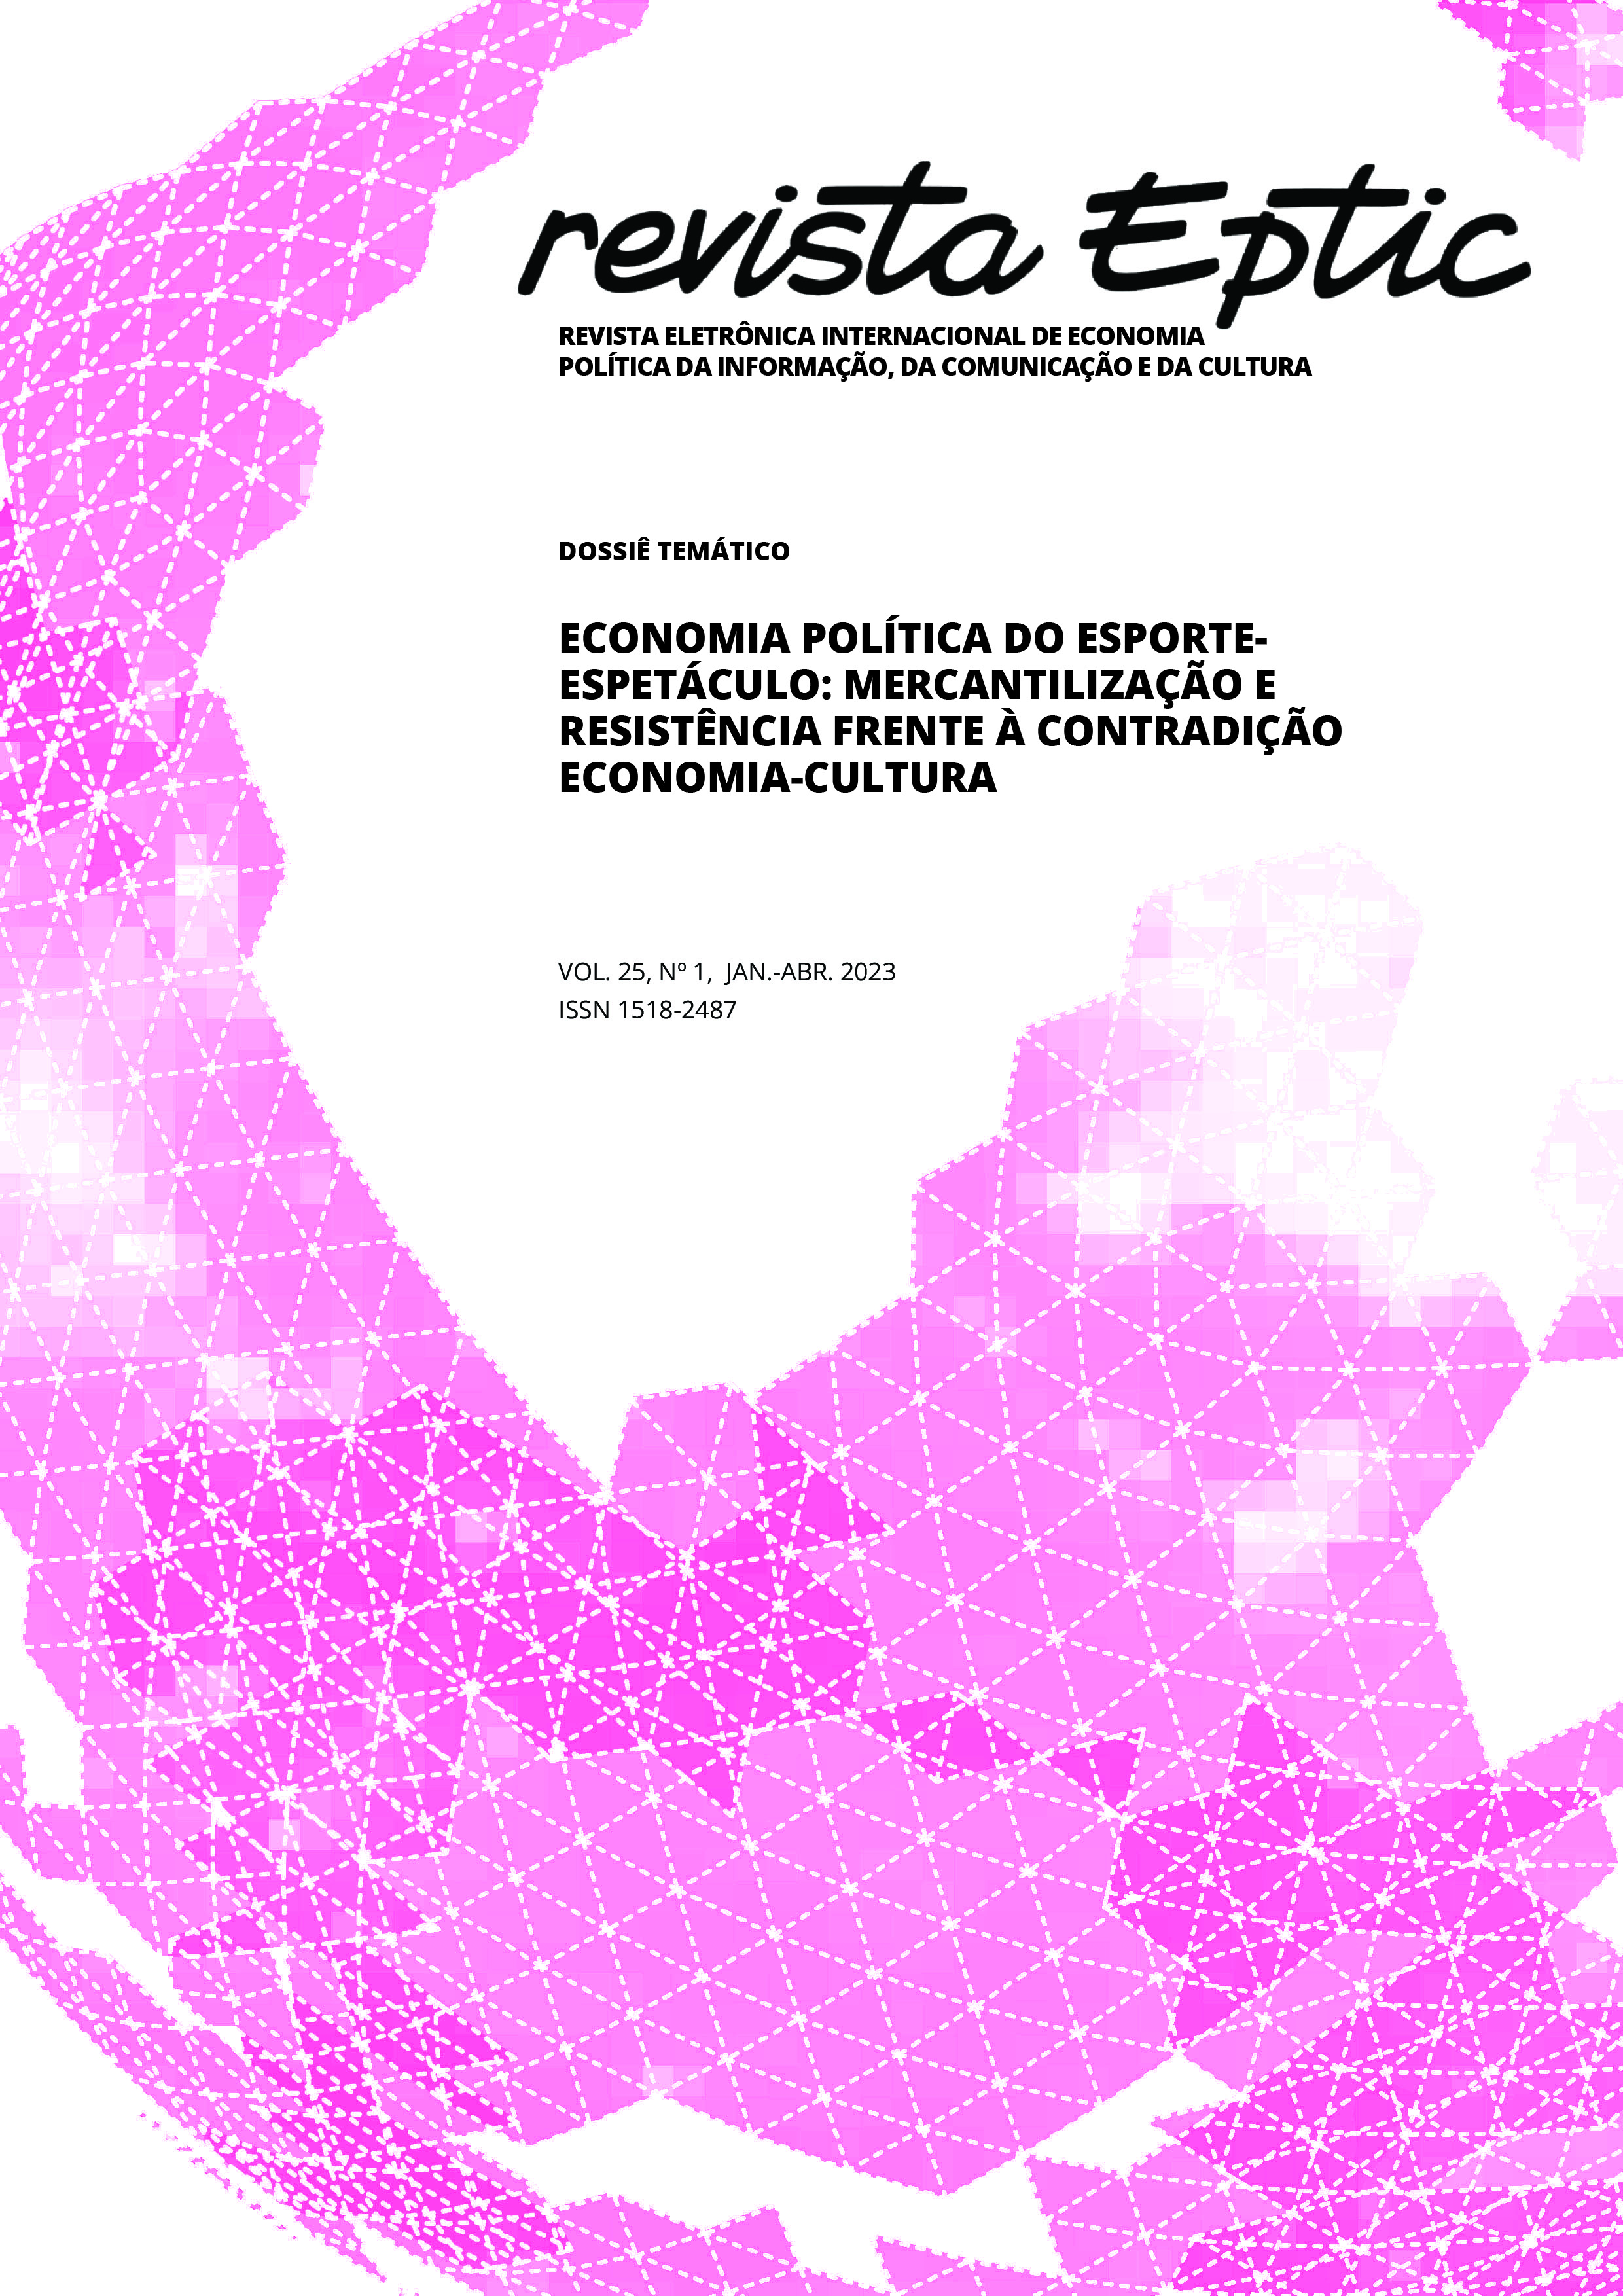 					Visualizar v. 25 n. 1 (2023): ECONOMIA POLÍTICA DO ESPORTE-ESPETÁCULO: MERCANTILIZAÇÃO E RESISTÊNCIA FRENTE À CONTRADIÇÃO ECONOMIA-CULTURA
				